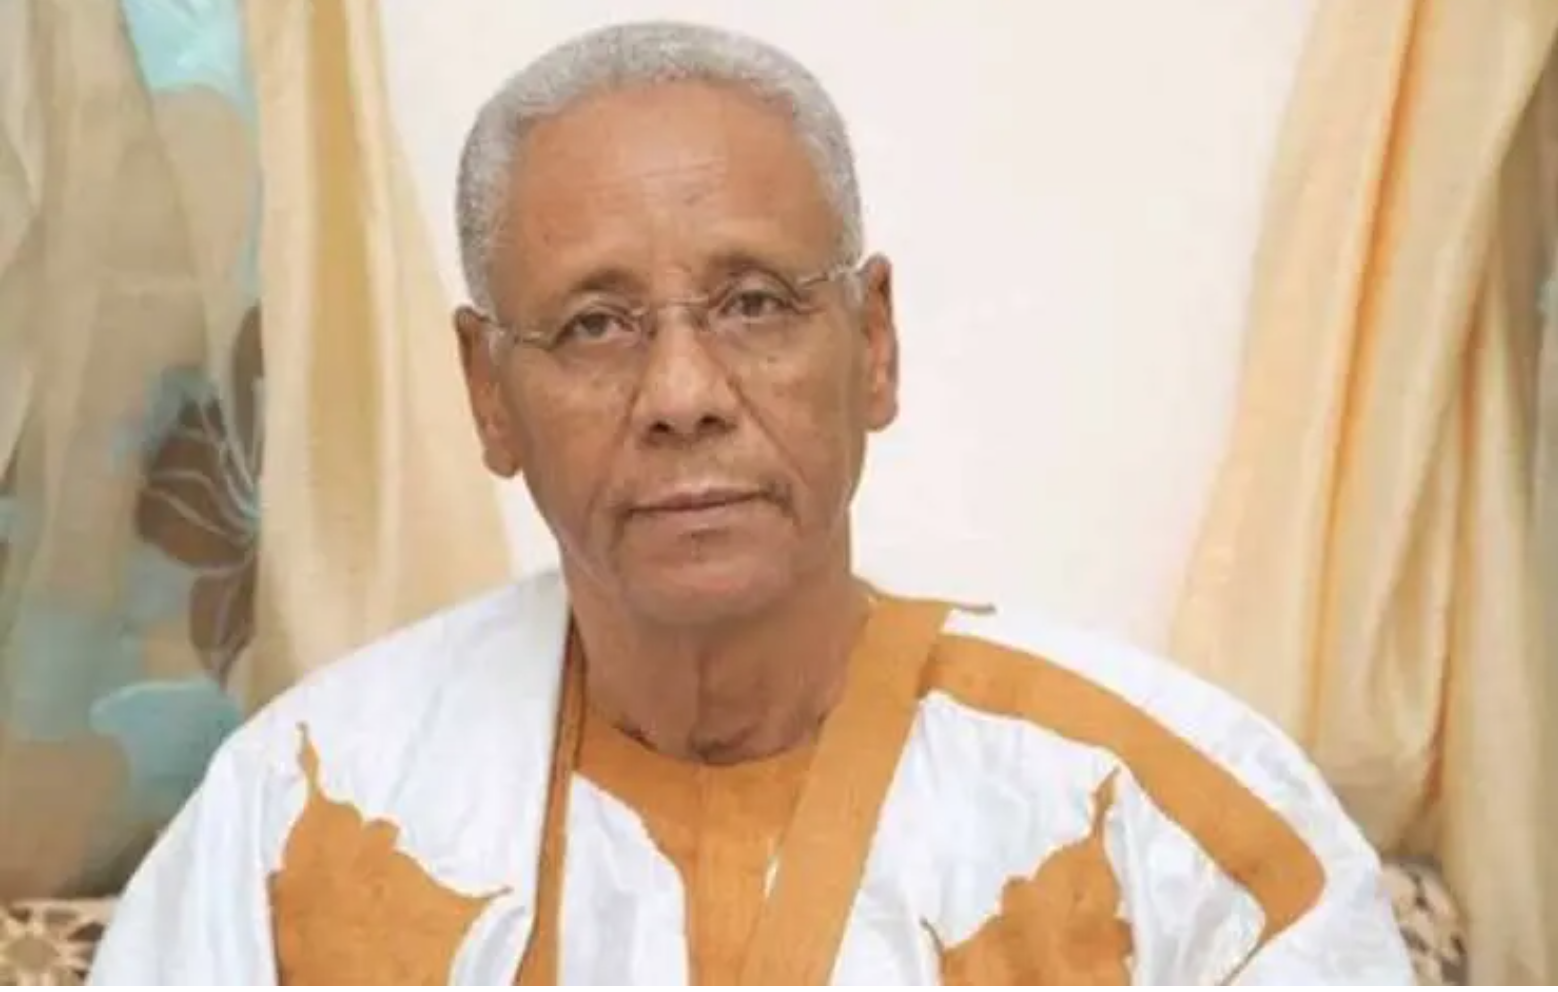 Mauritanie : désistement et retrait de la haute cour de justice